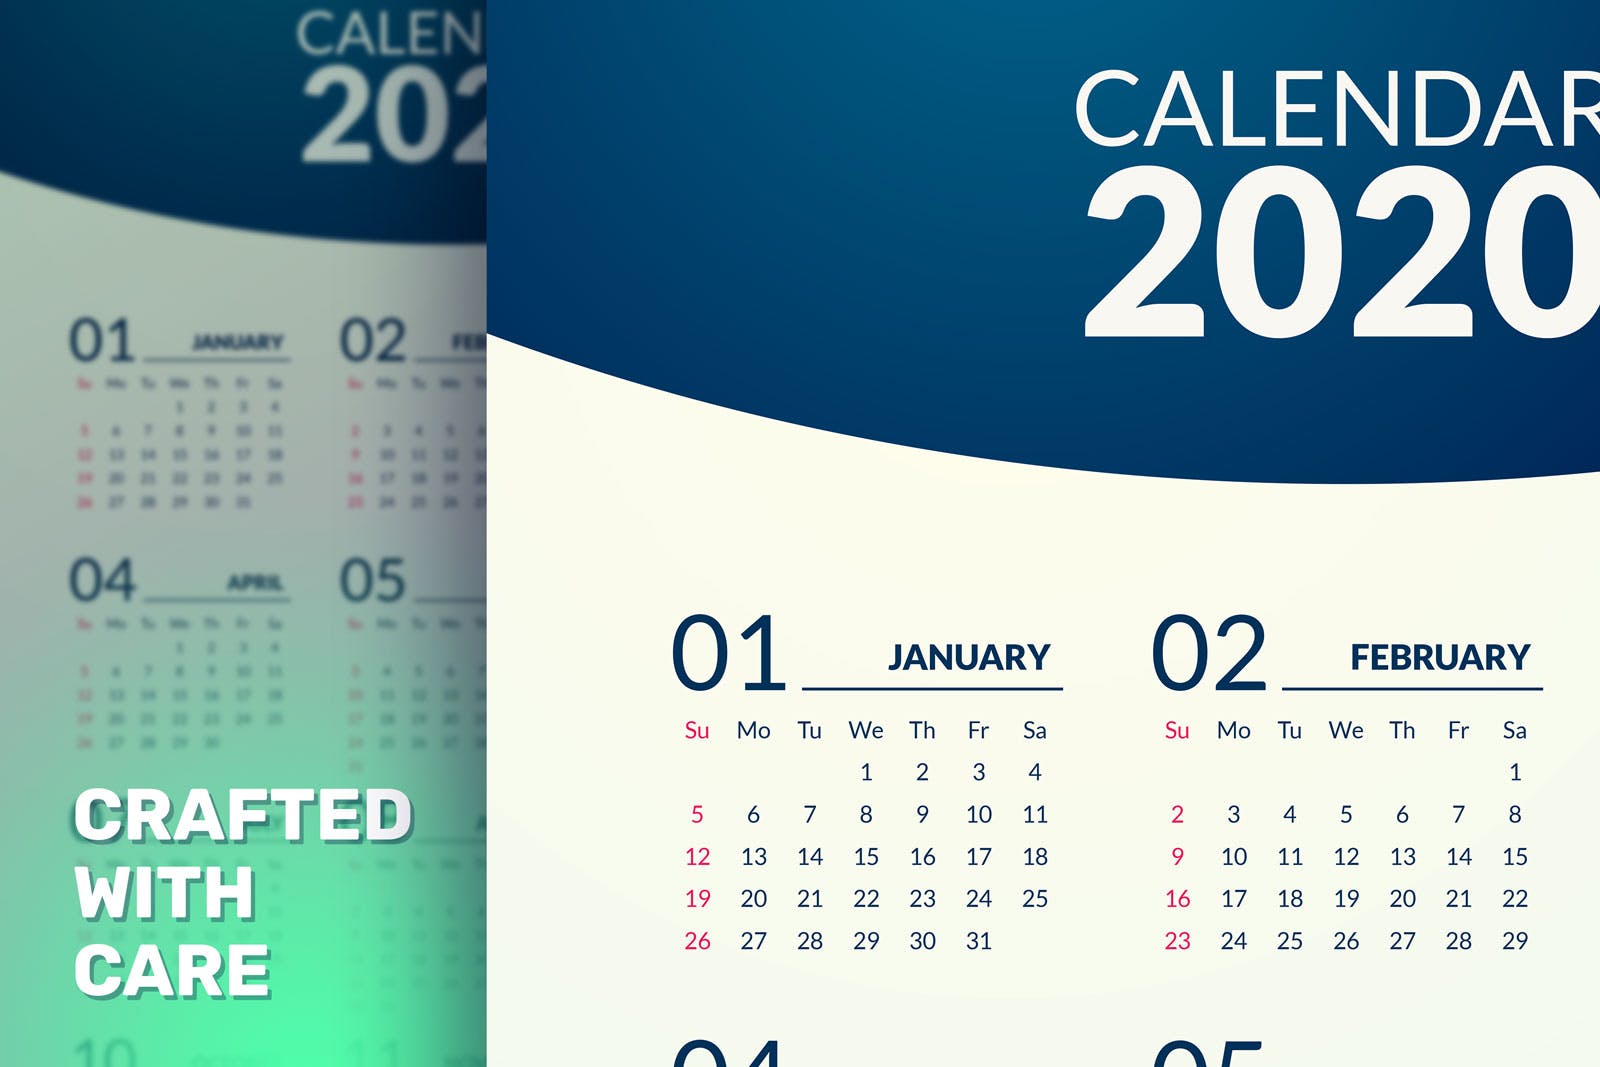 极简风格2020年挂历设计模板 Minimal Calendar 2020插图(3)